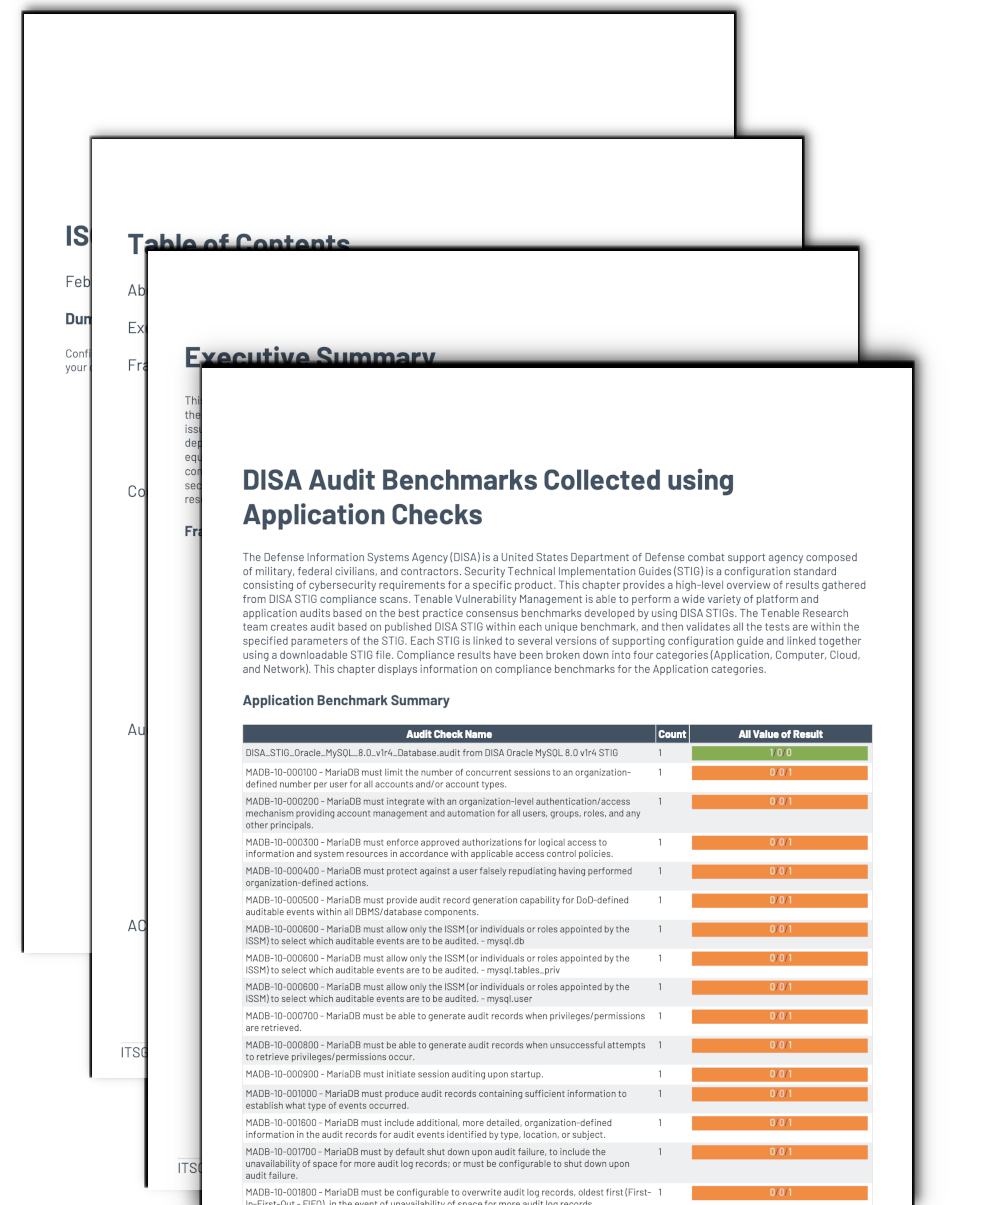 DISA Audit Benchmarks Summary Image